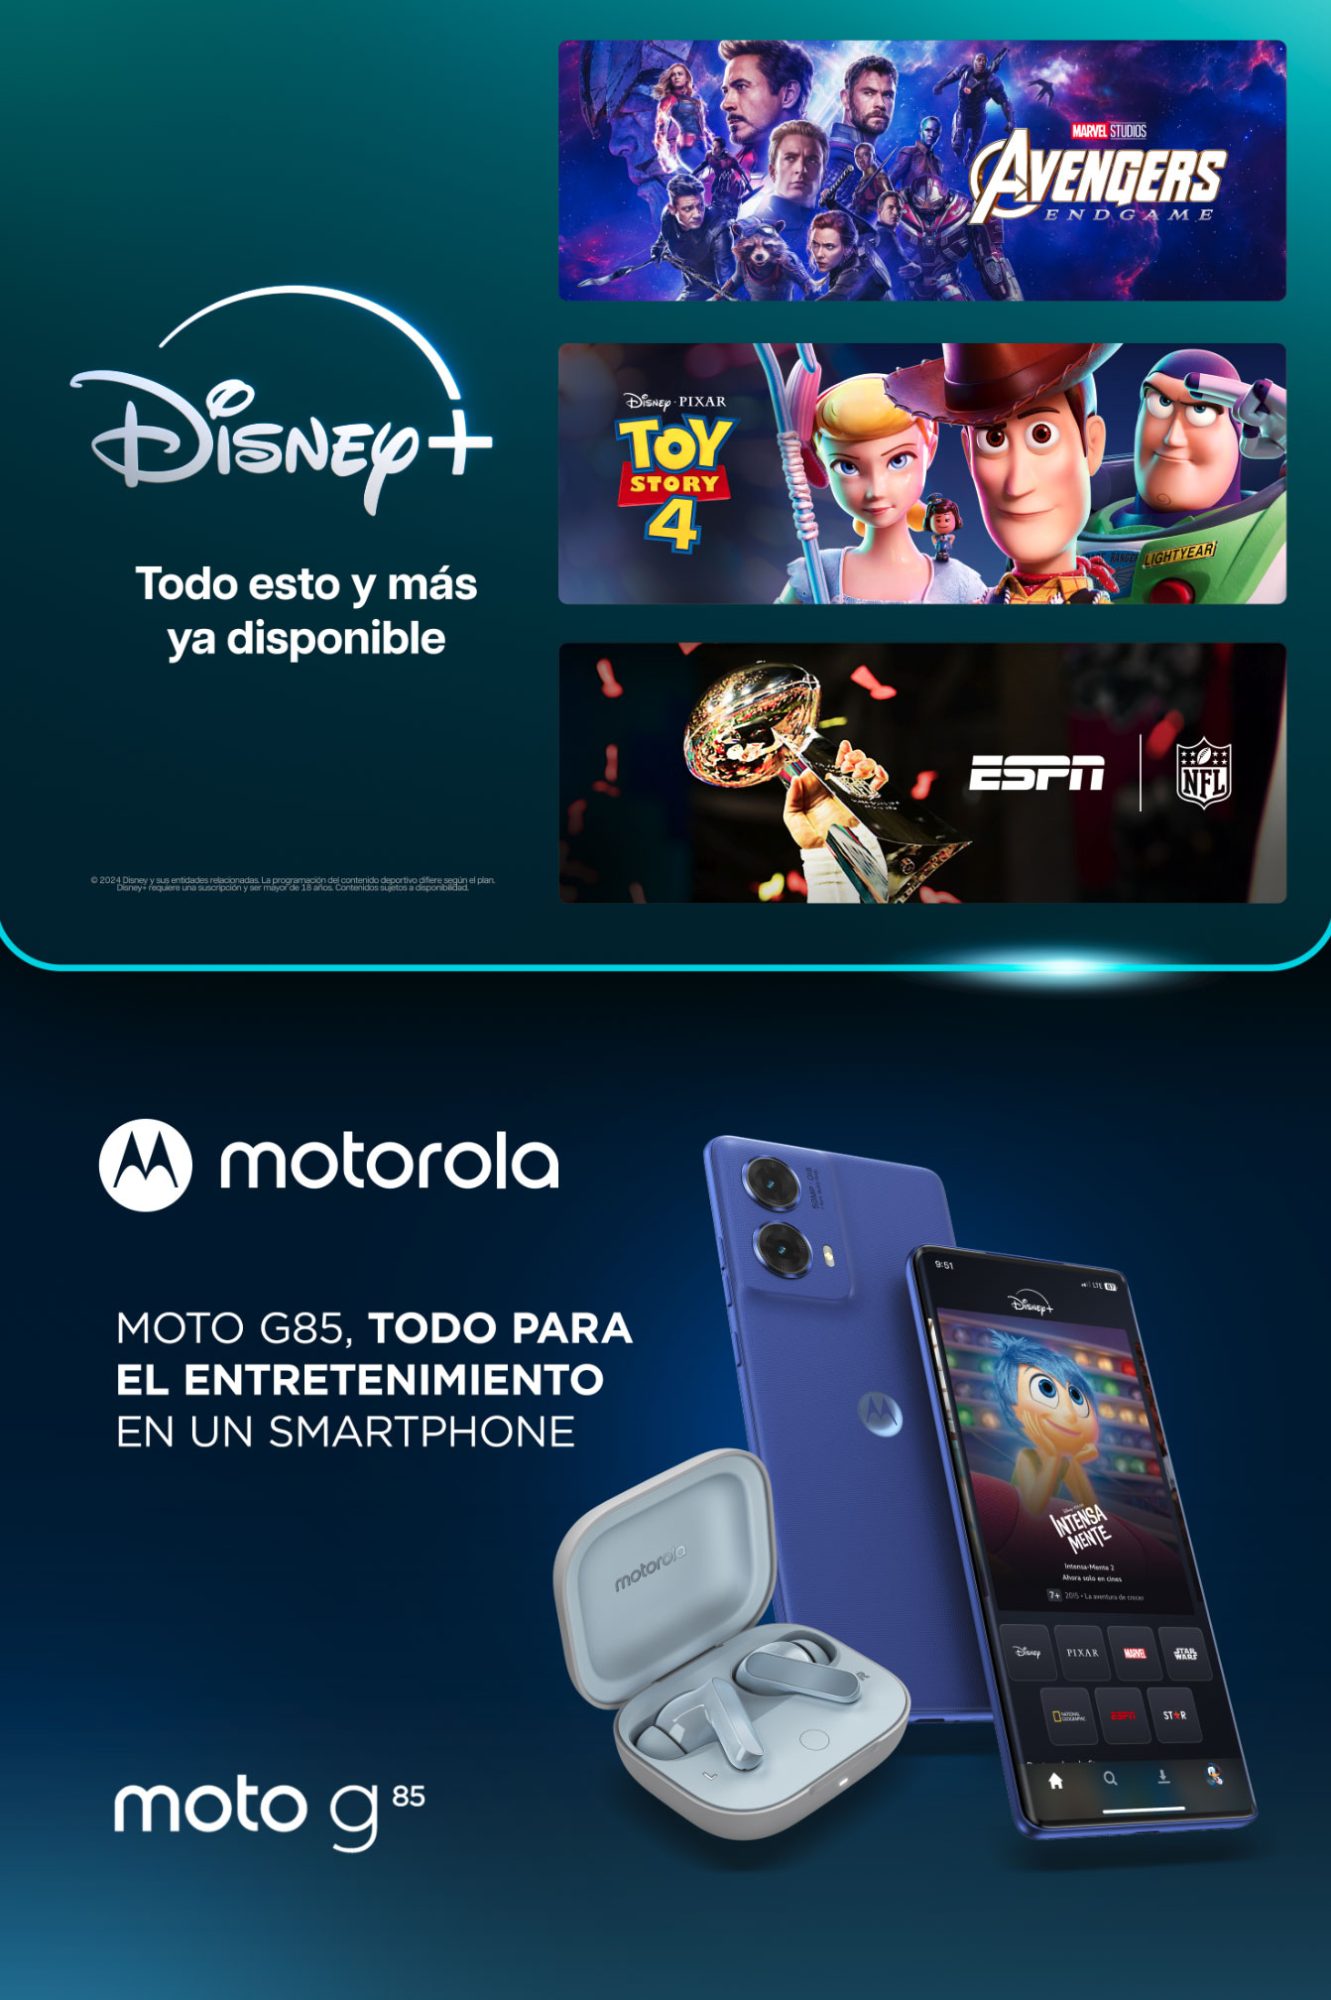 Motorola Disney+